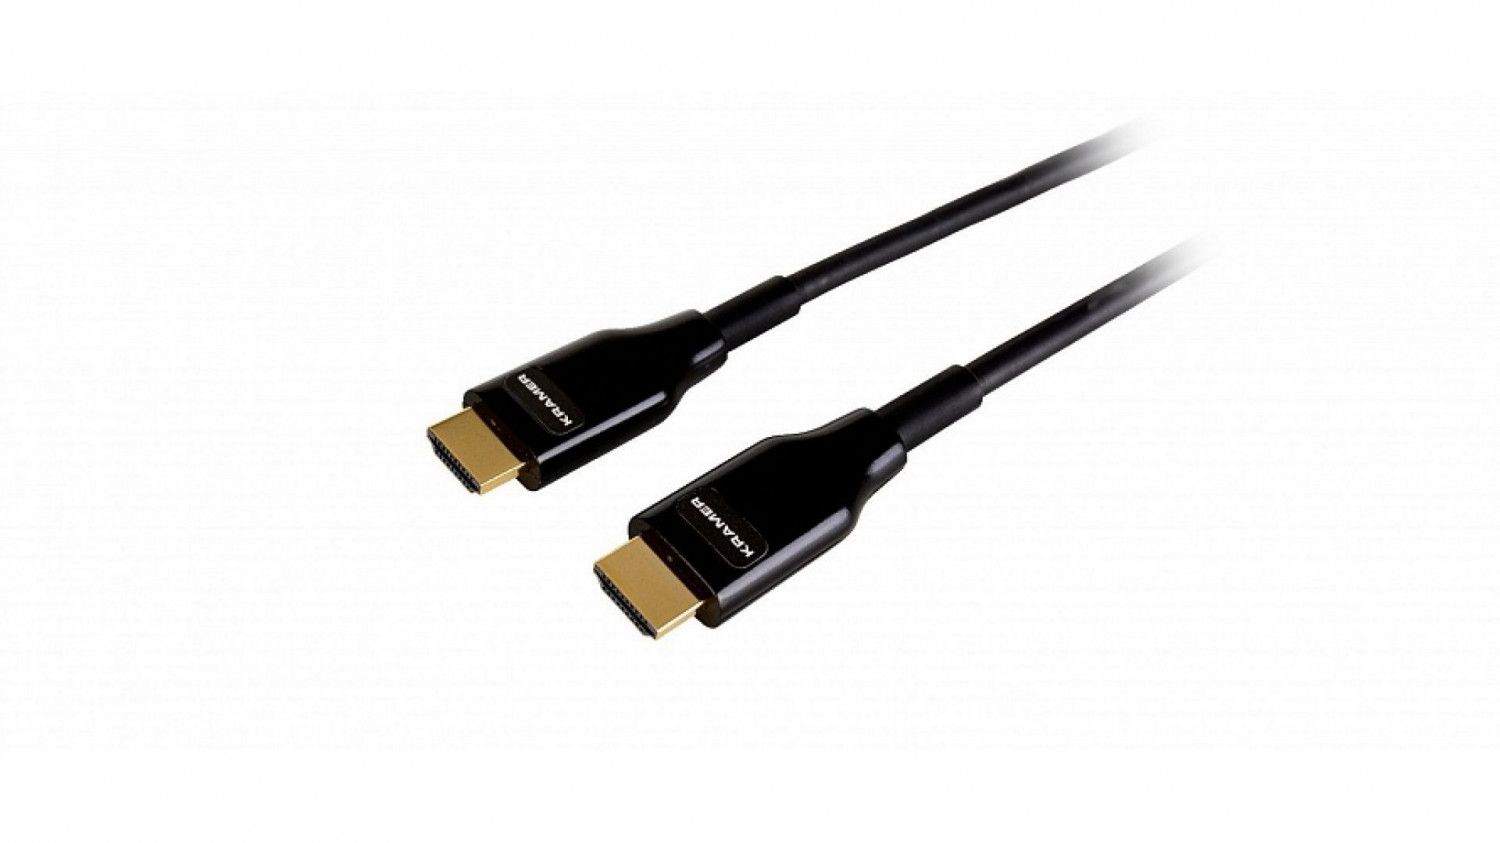 Активный оптический кабель HDMI для арендных и выставочных мероприятий, поддержка 4К 60 Гц (4:4:4), 90 м Kramer Electronics CRS-AOCH/CLR/60-295